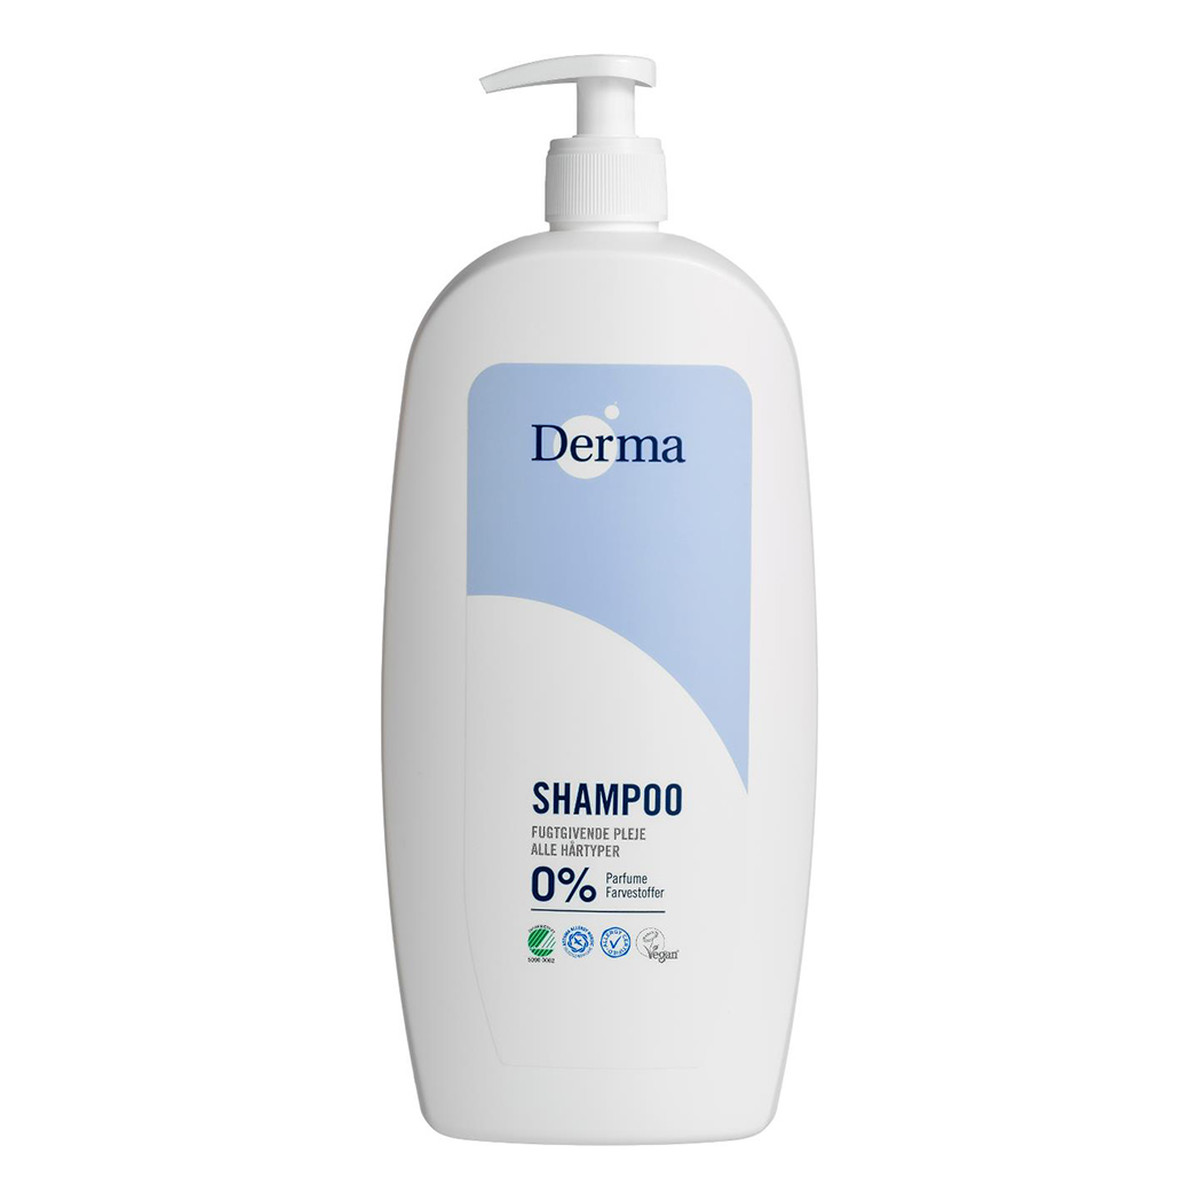 Derma Family shampoo łagodny szampon do włosów 1000ml